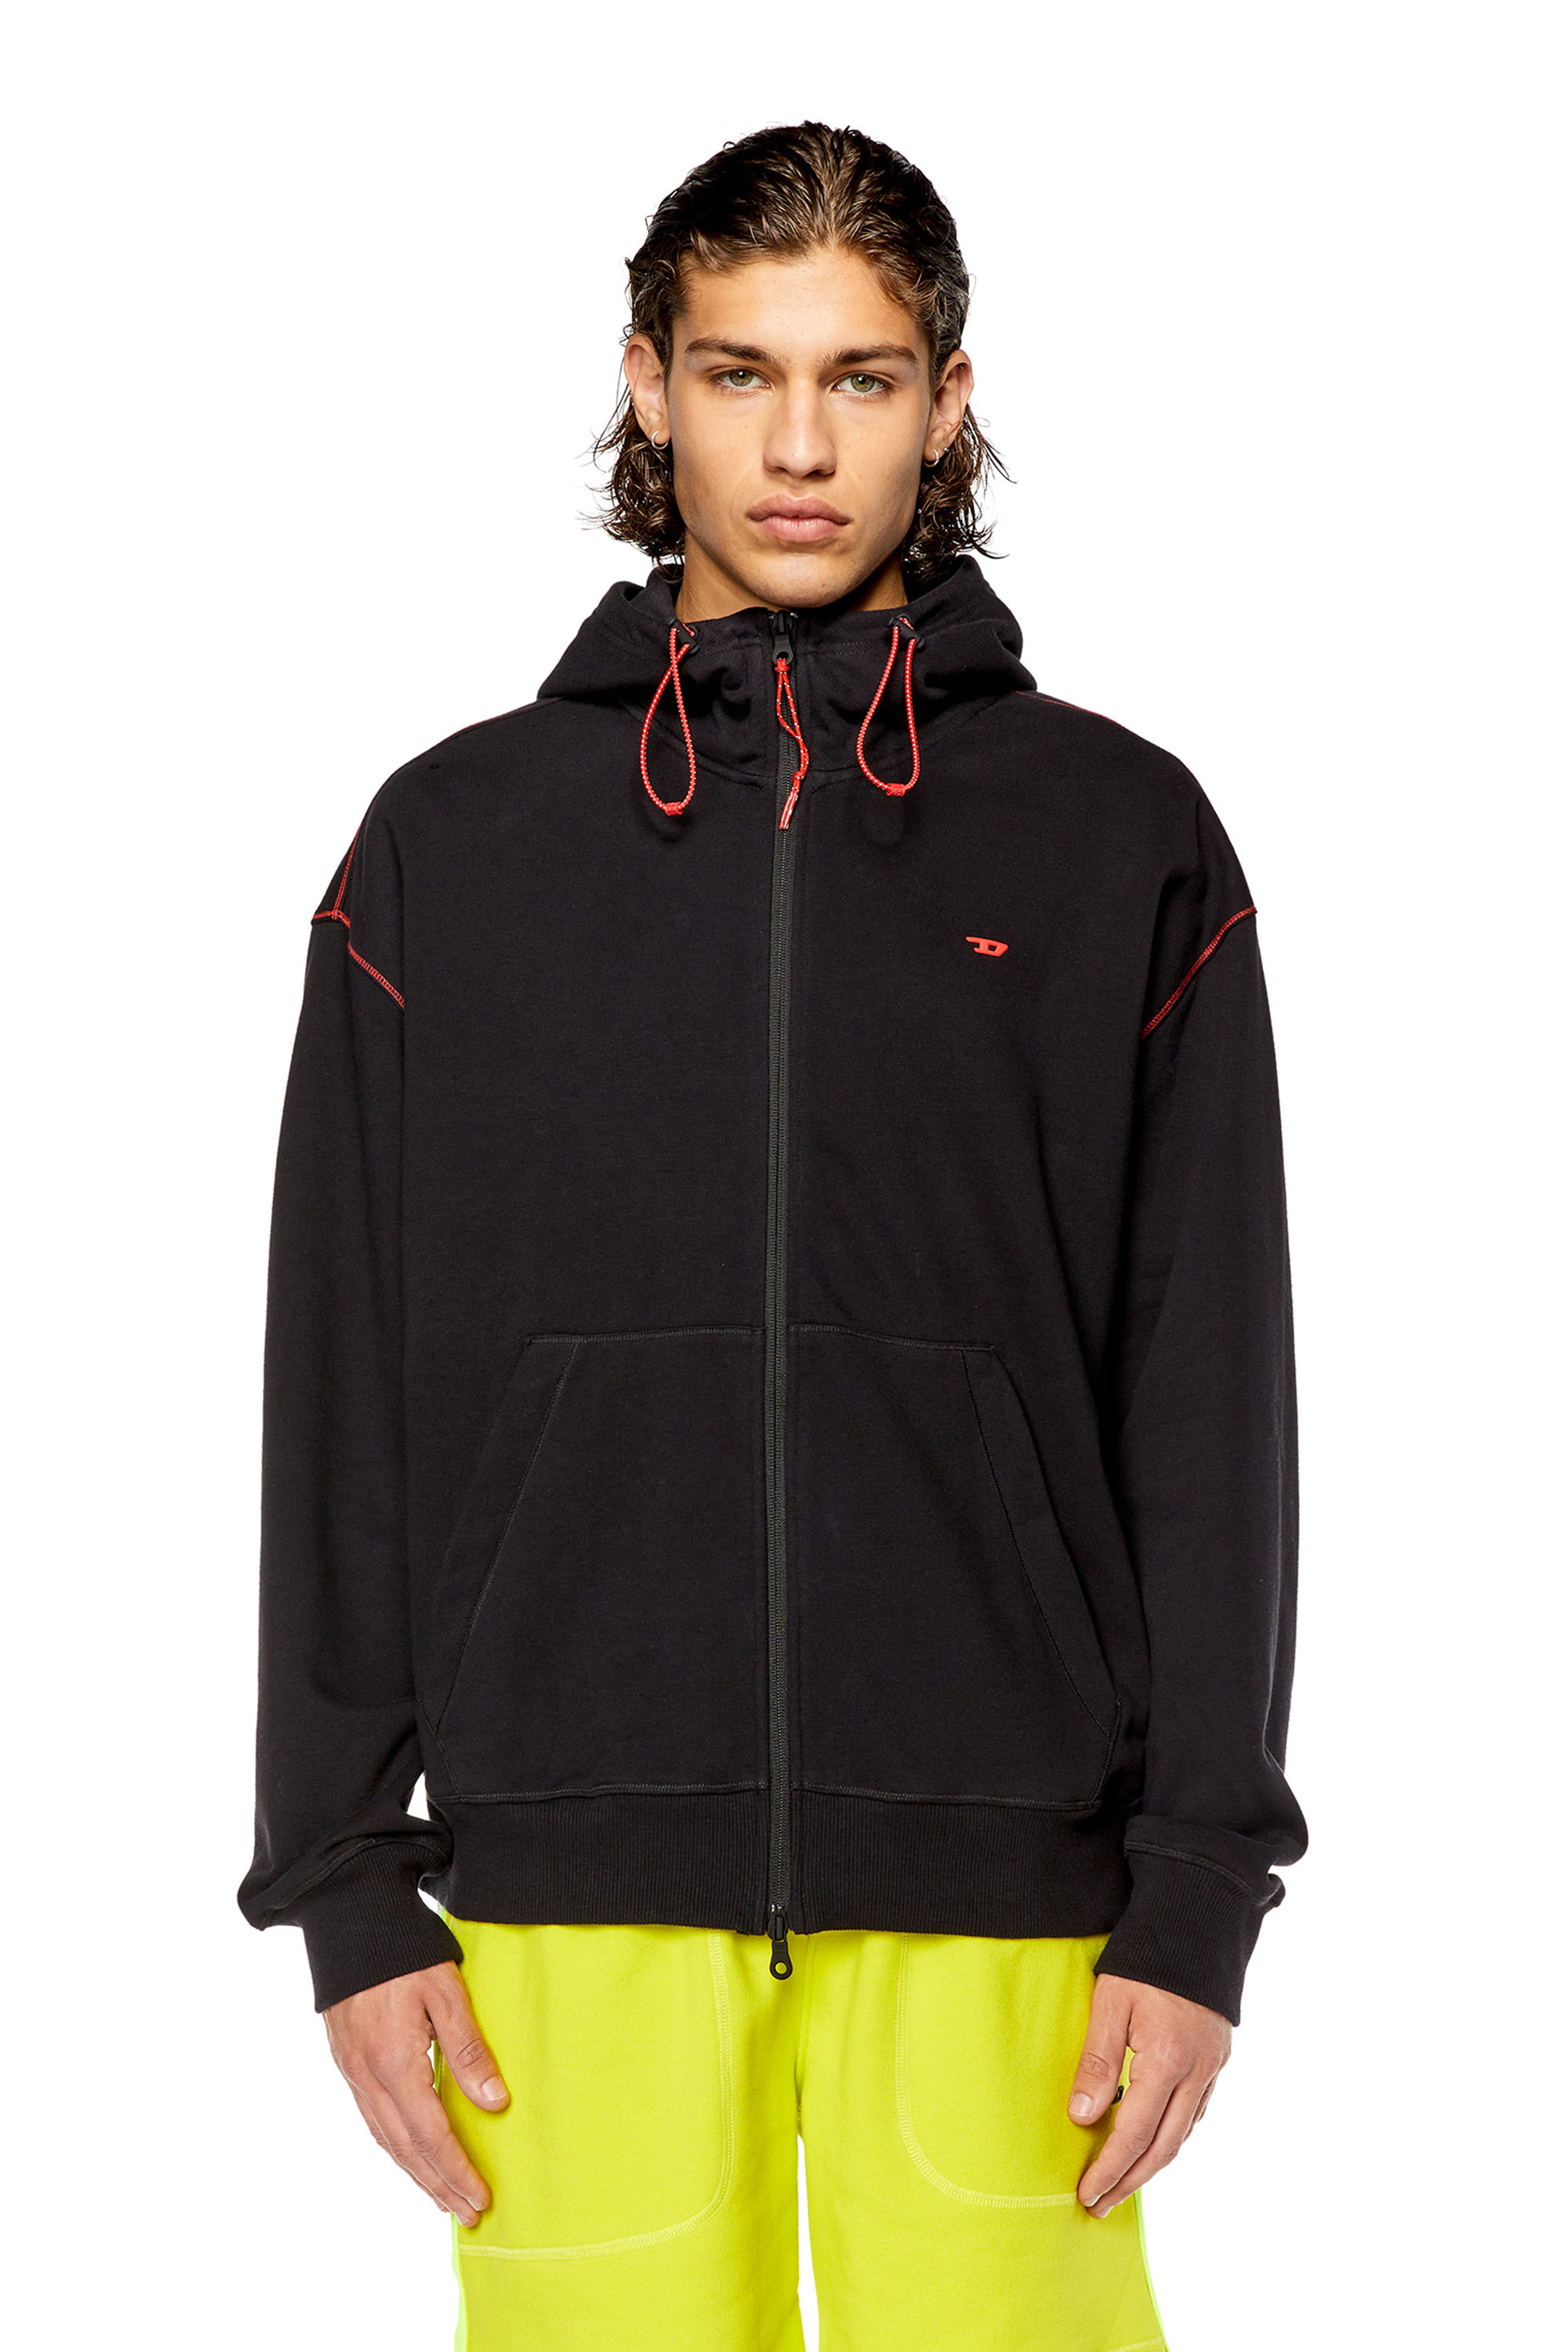 Diesel - Sweat-shirt à capuche zippé avec bandes à logo réfléchissantes - Pull Cotton - Homme - Polychrome